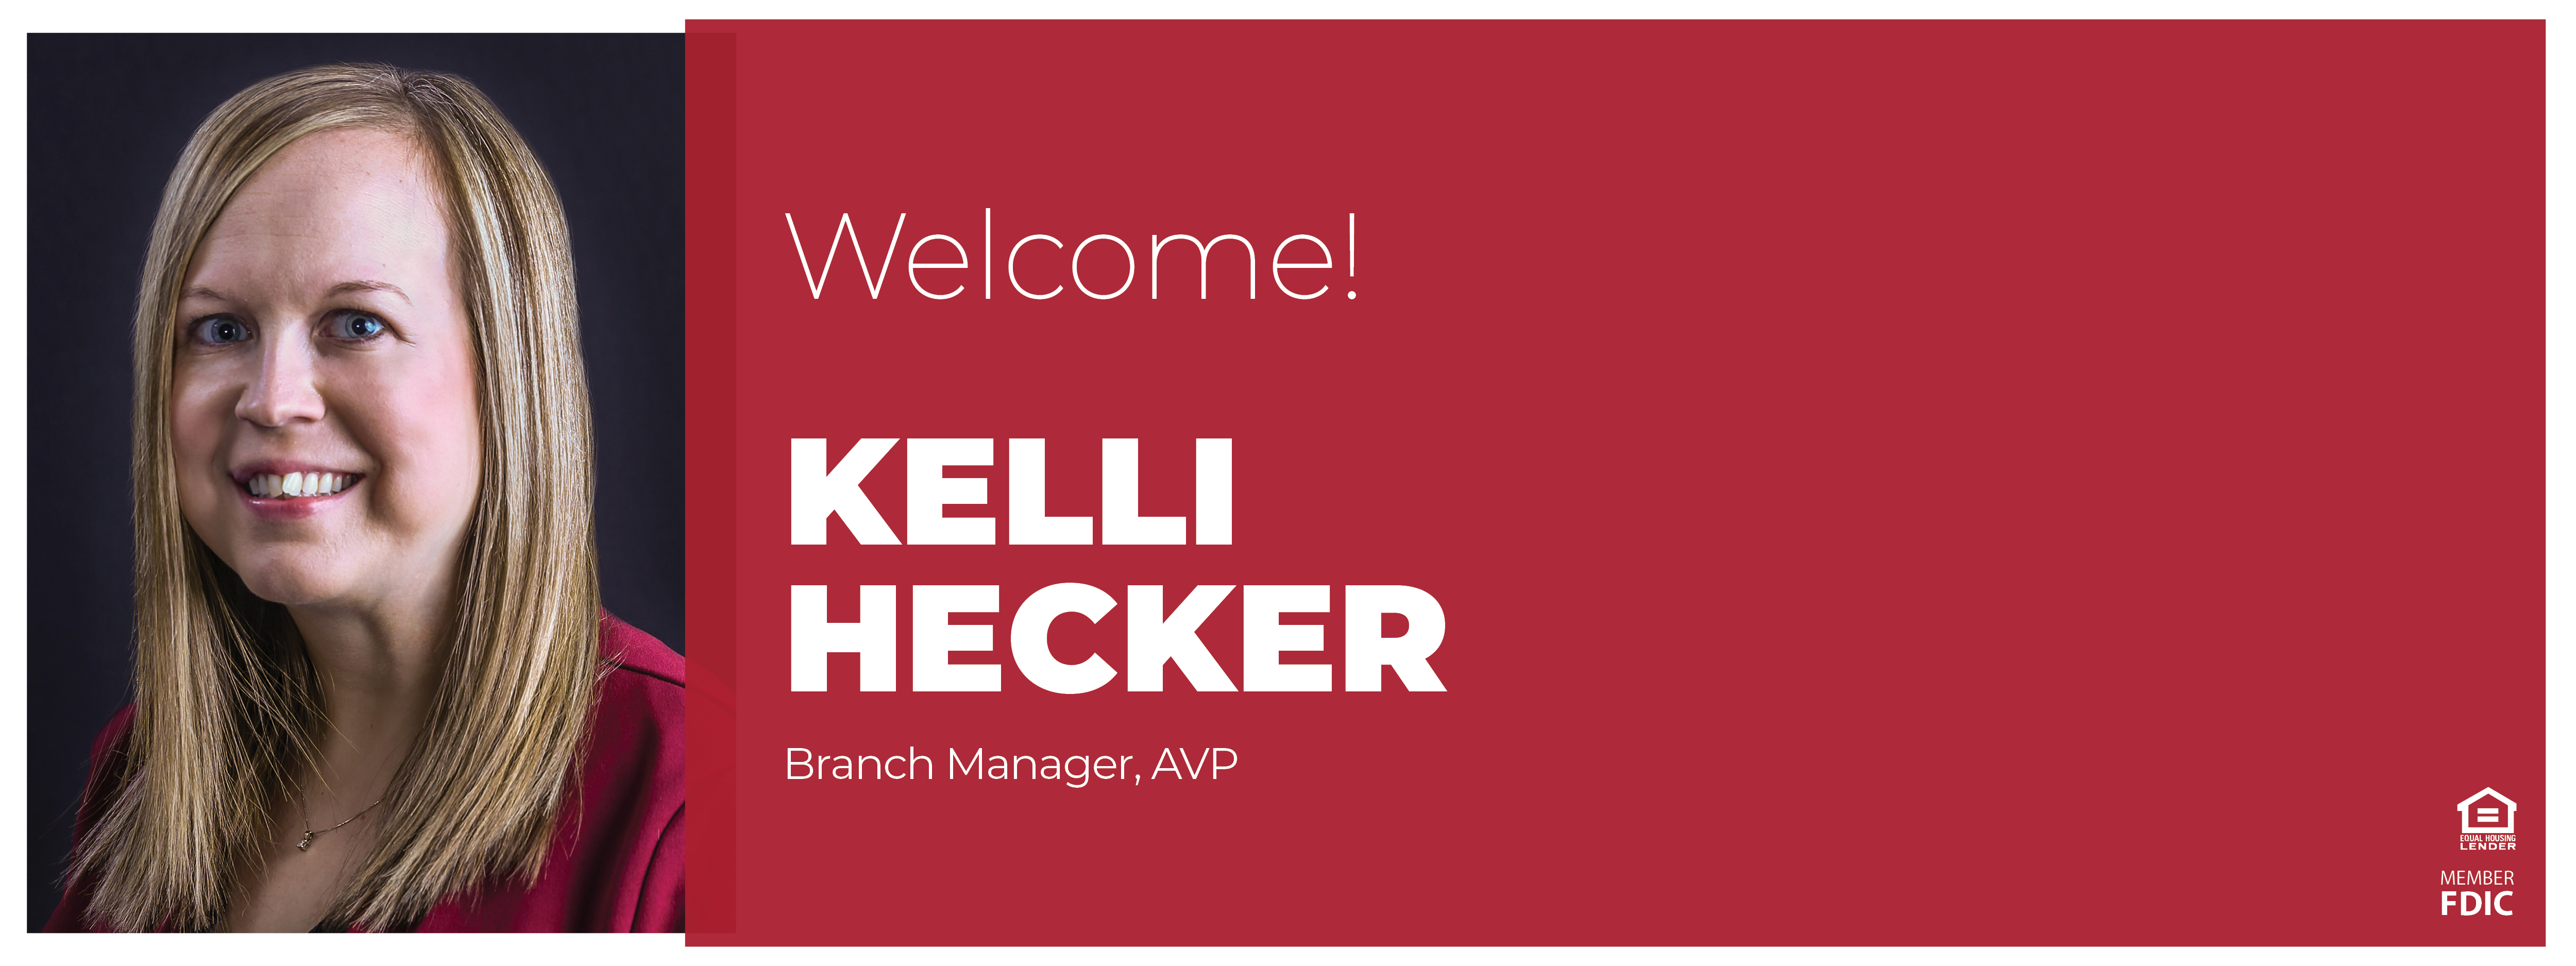 Welcome Kelli Hecker